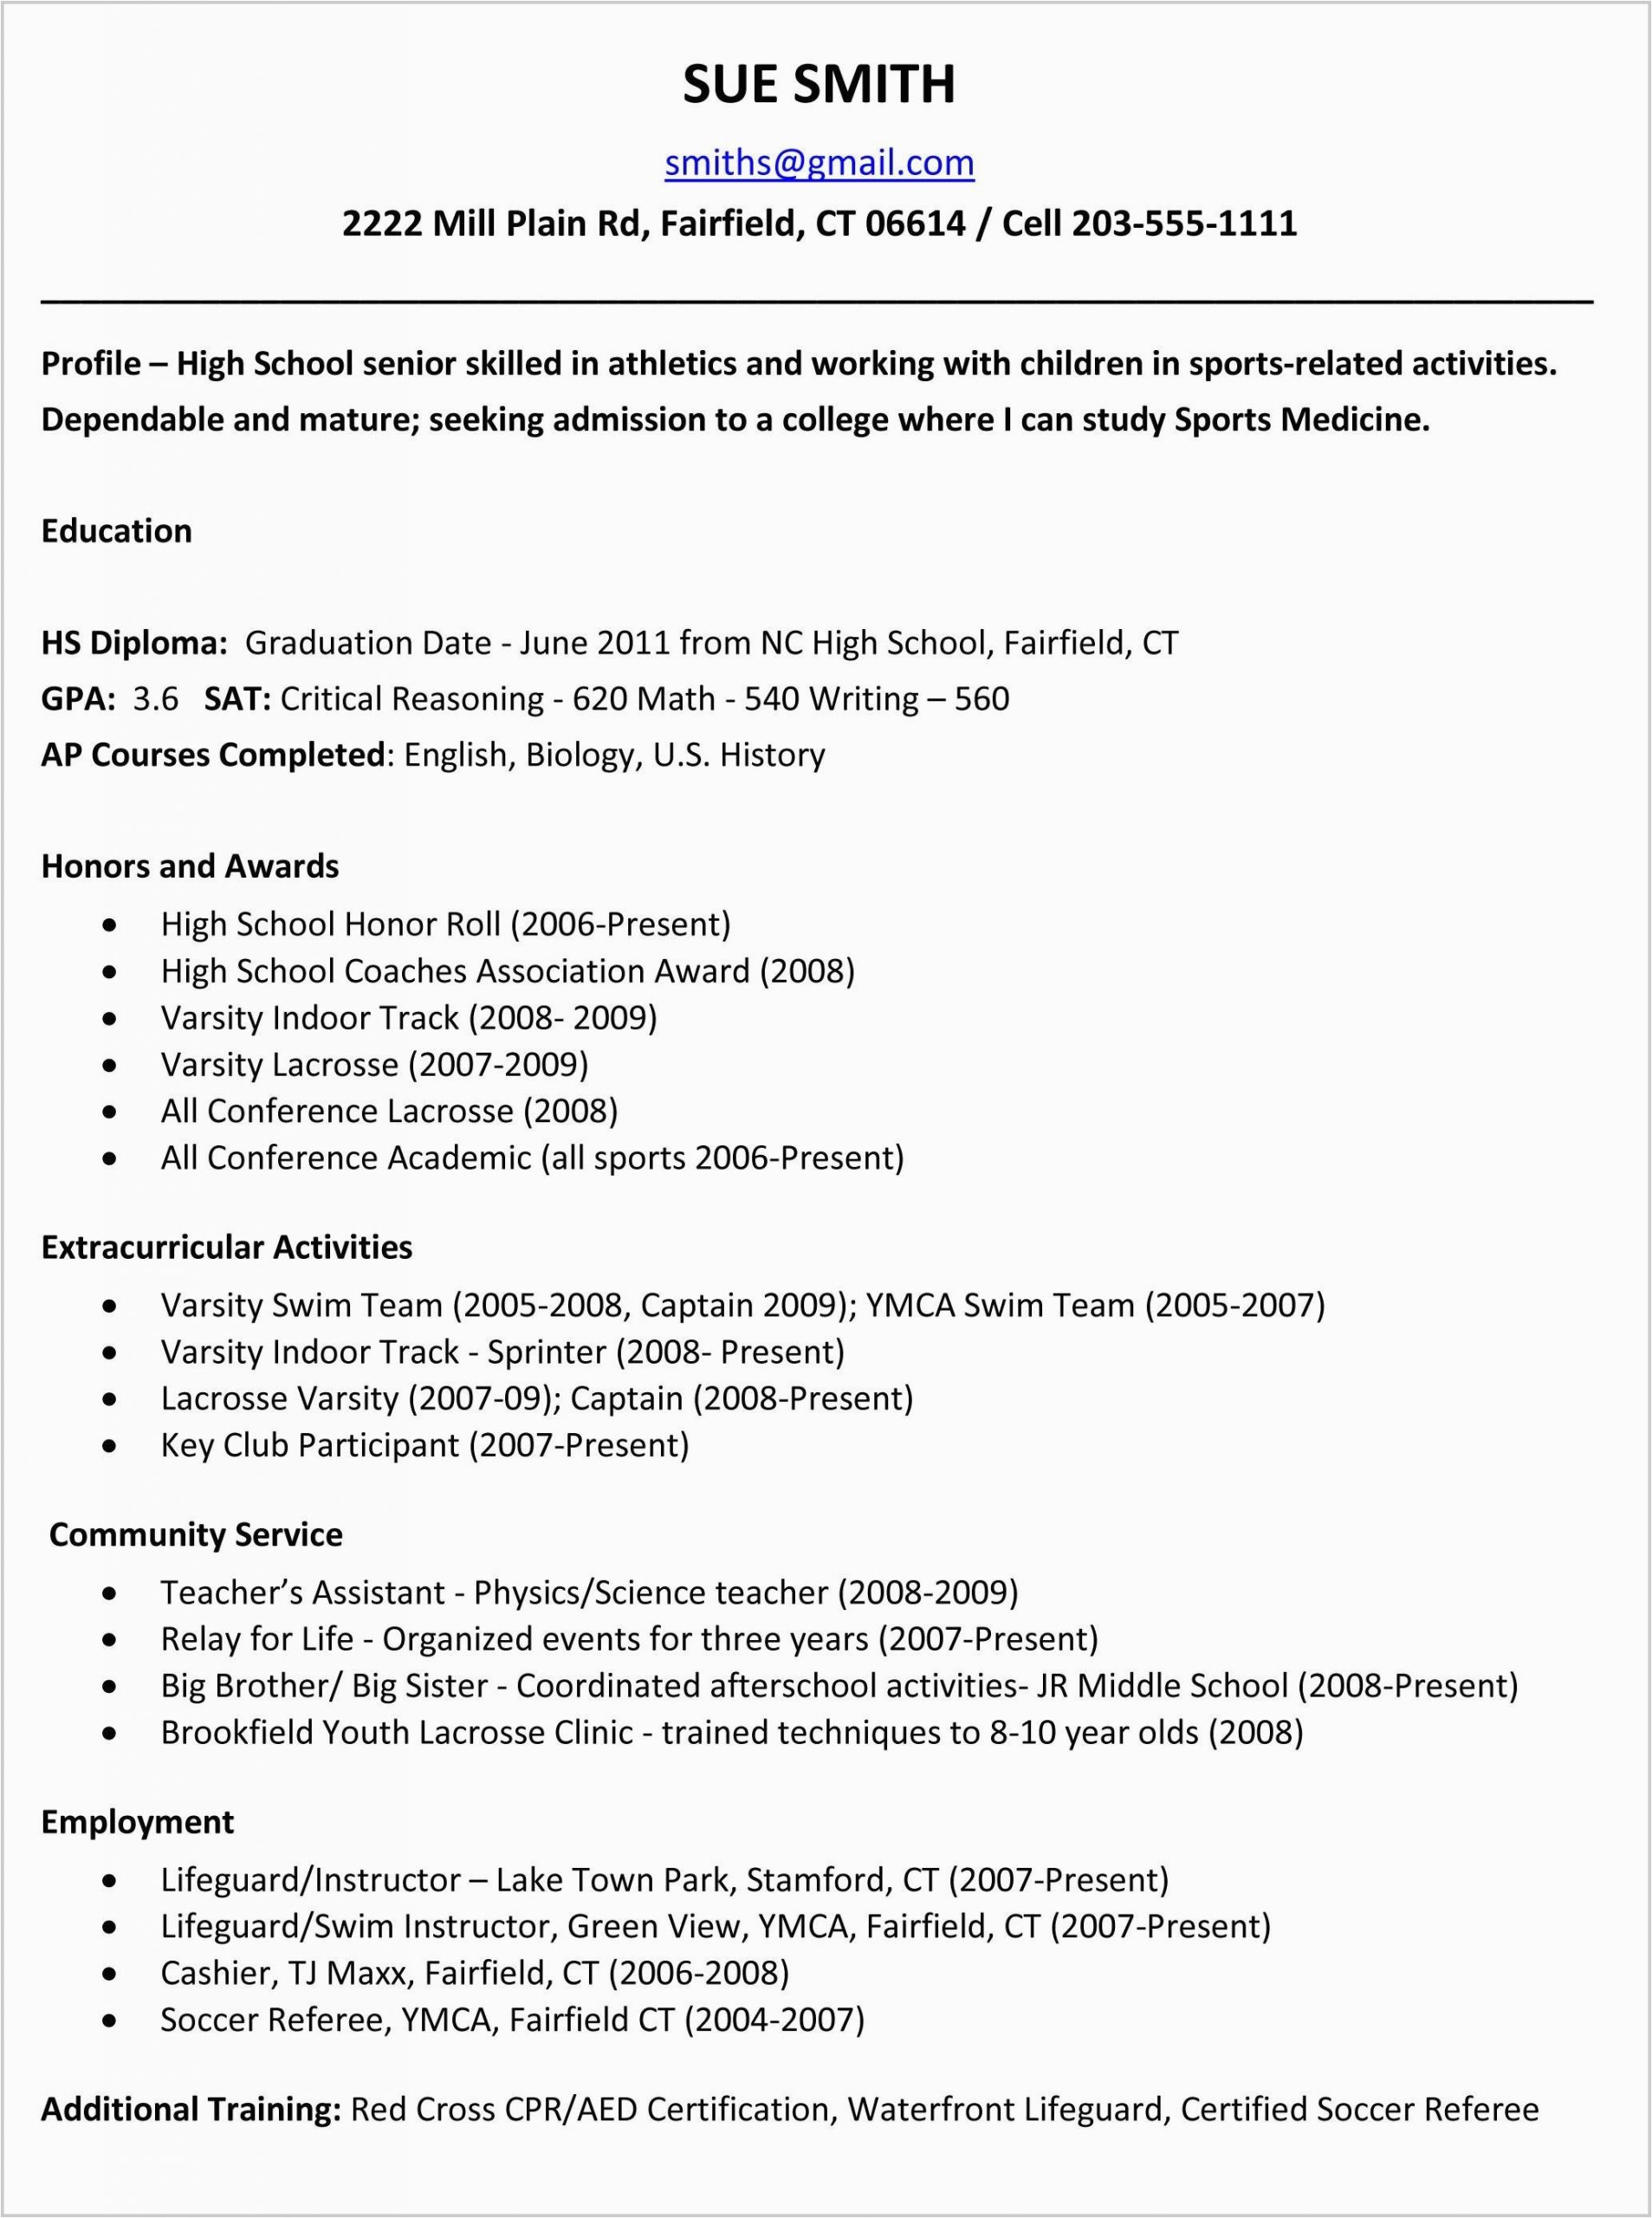 Sample Resume for High School Senior 12 13 High School Student Resume Samples